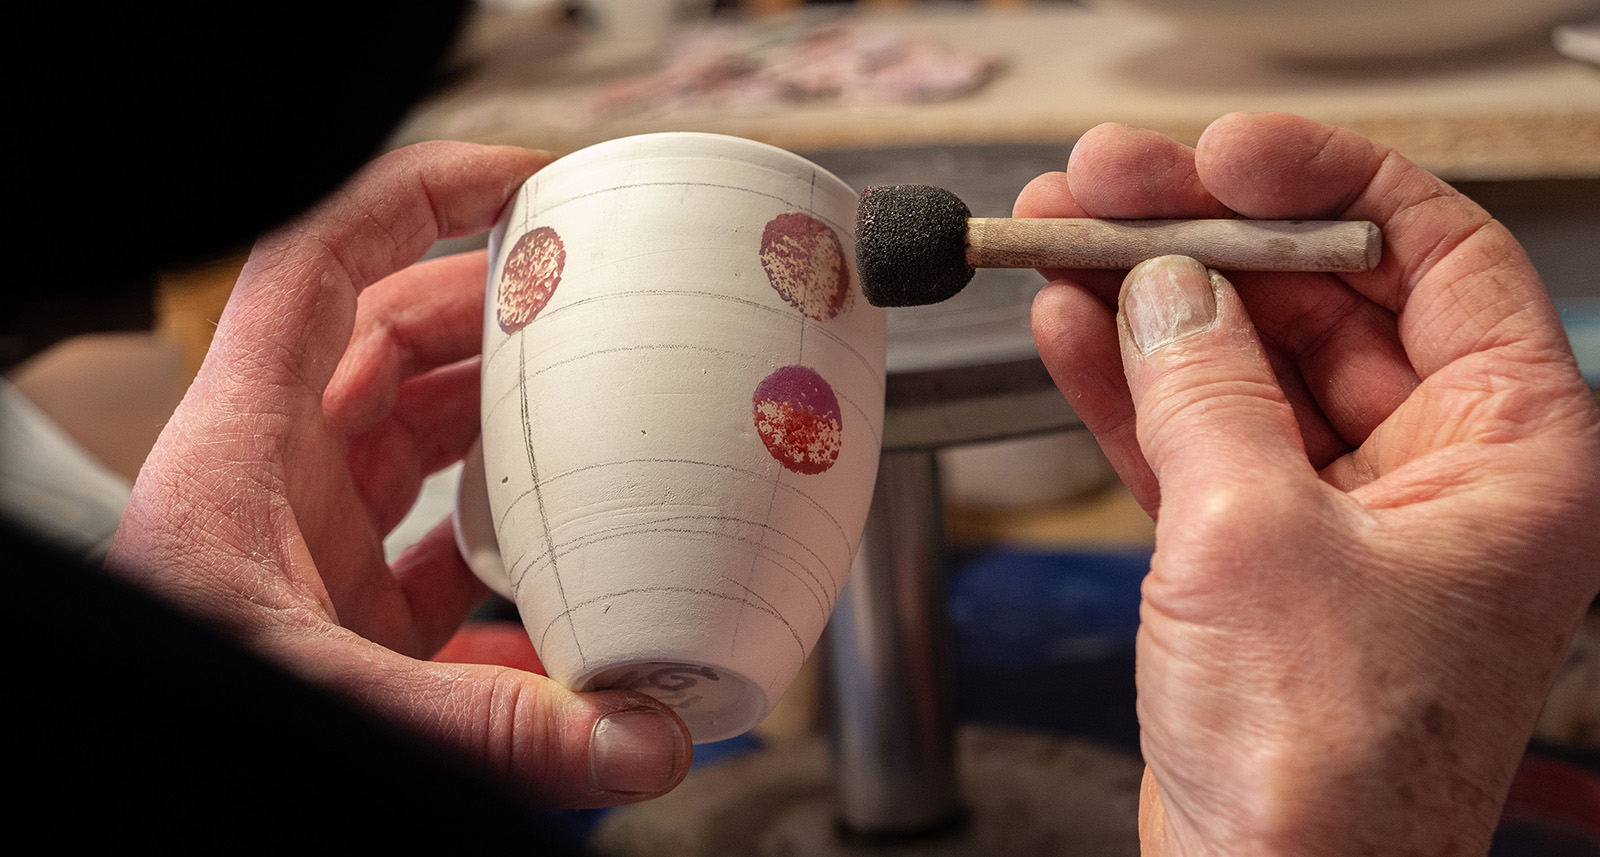 Dekorering for hånd av krus i steingodsleire ved keramiker Esther Schenker i Valdres Keramikk Atelier. Foto: Nilsson Cinematics